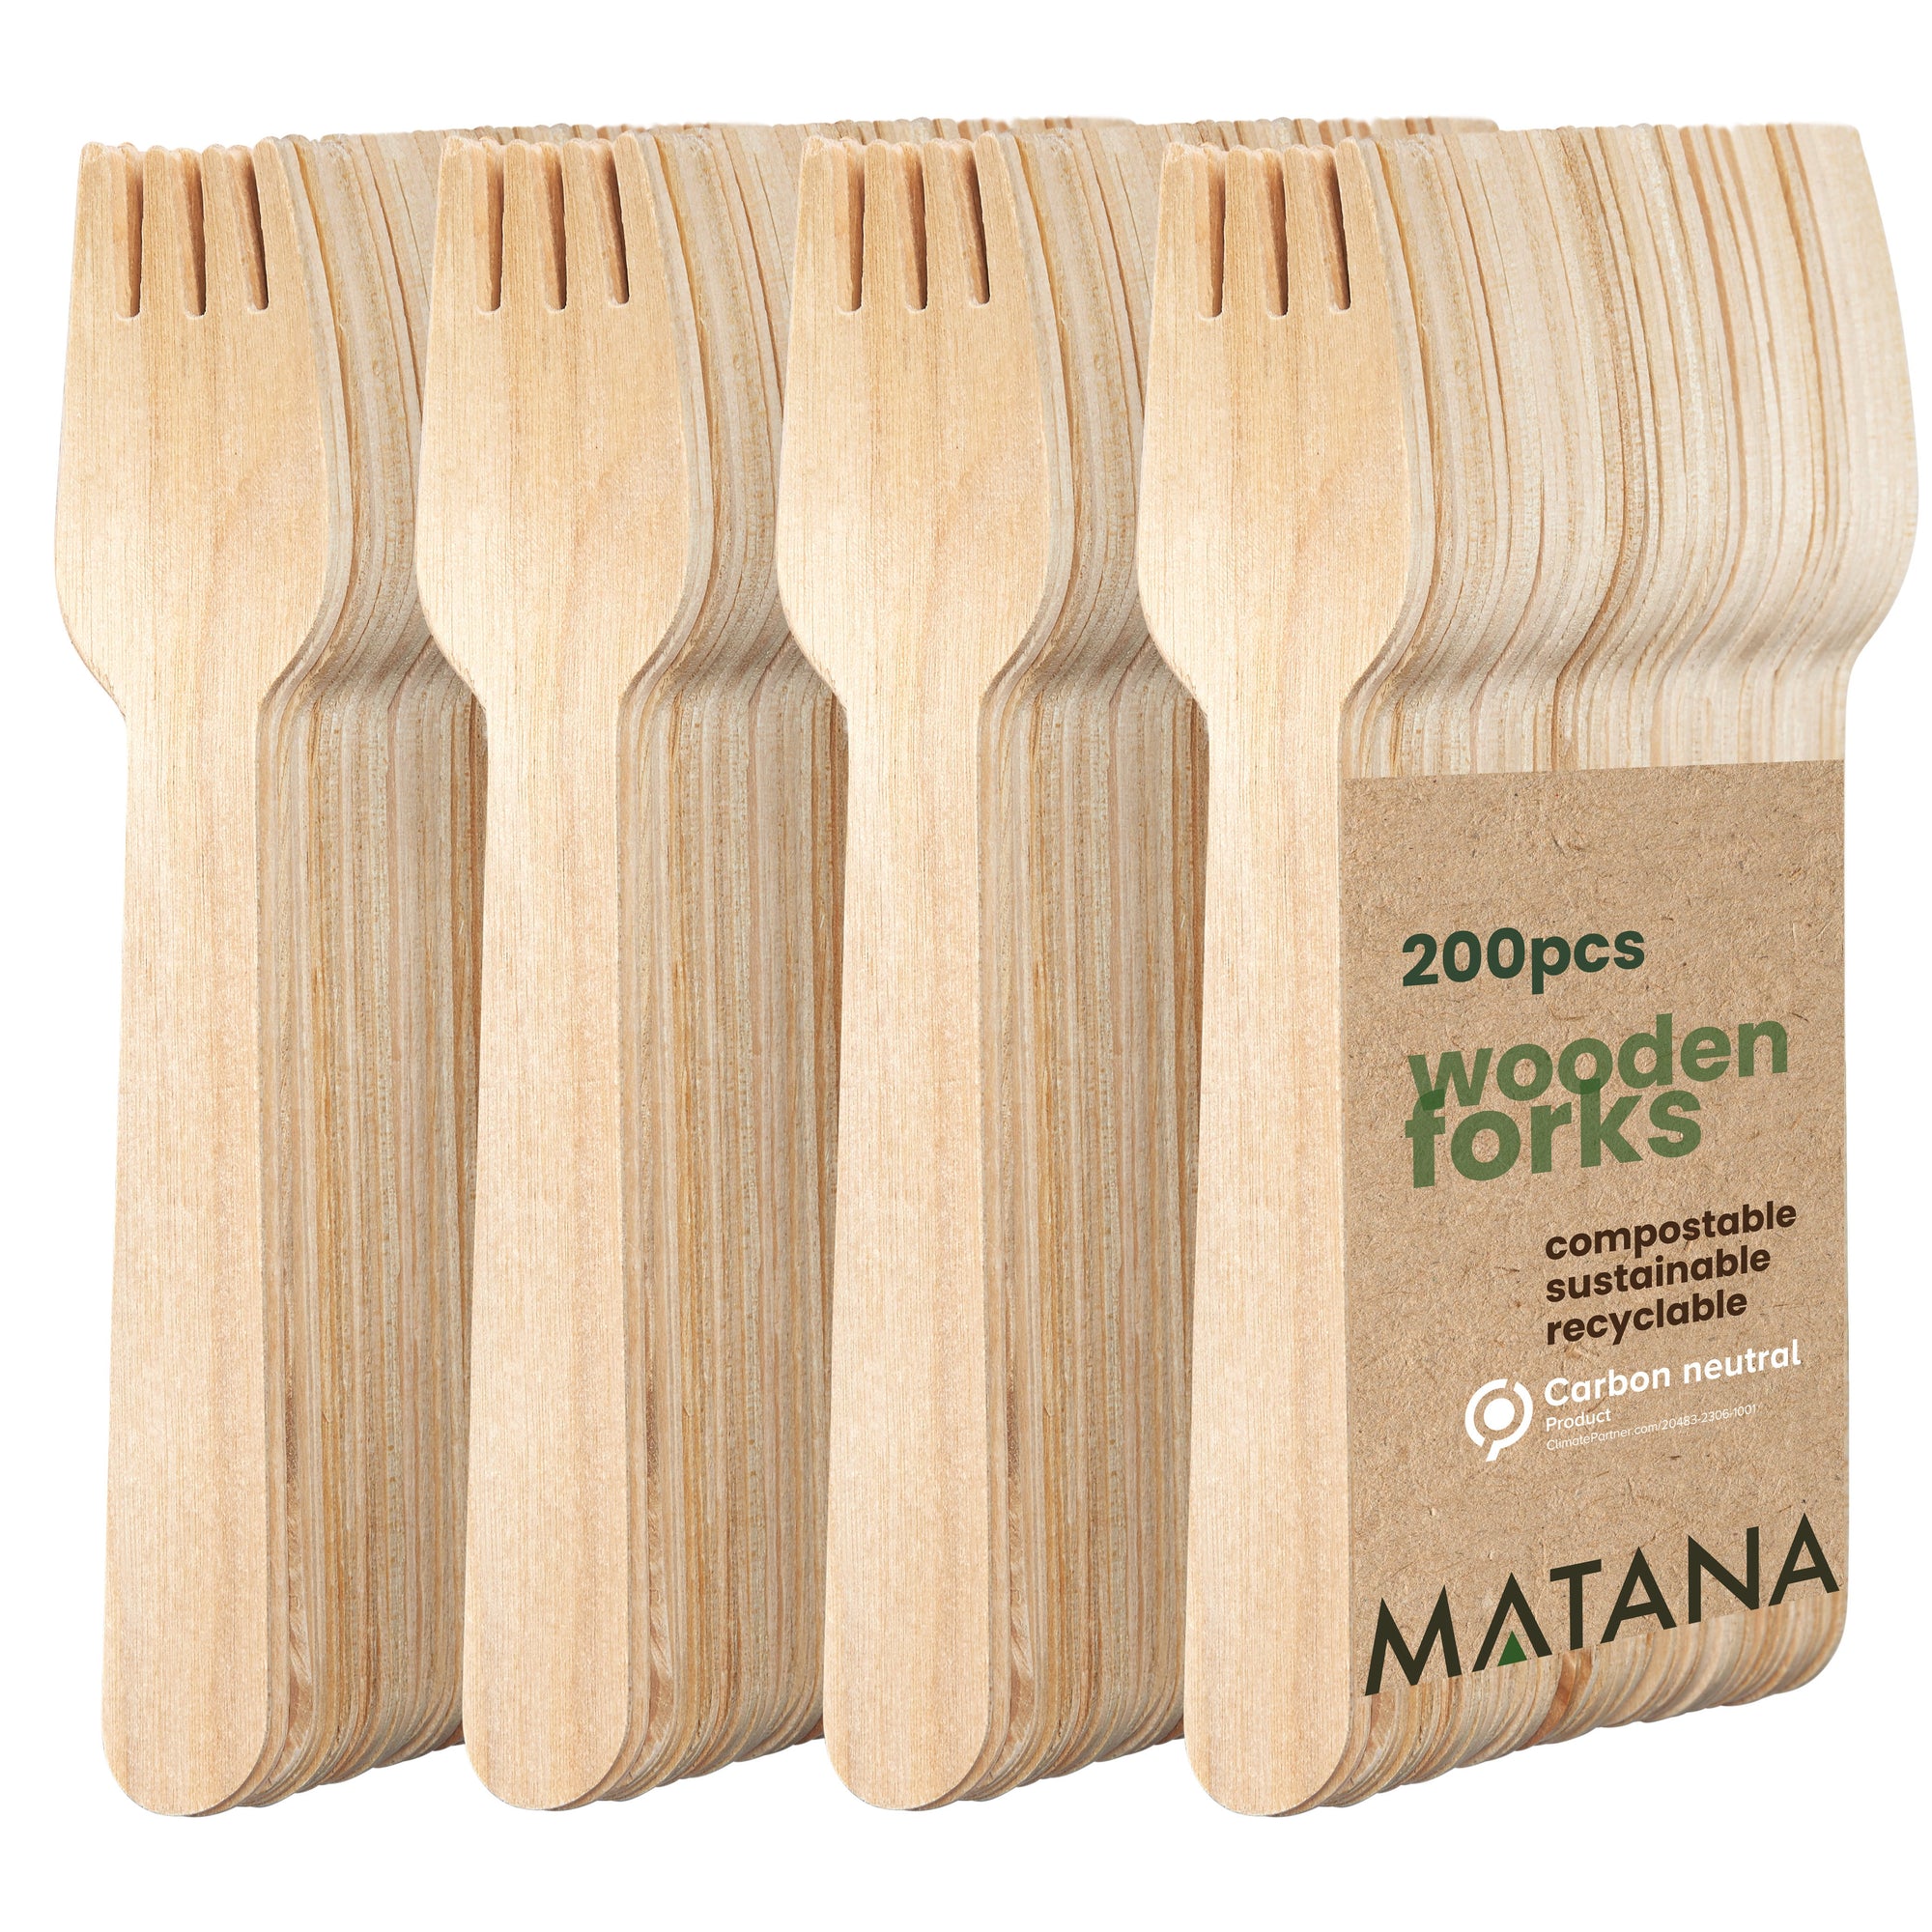 200 Wooden Forks